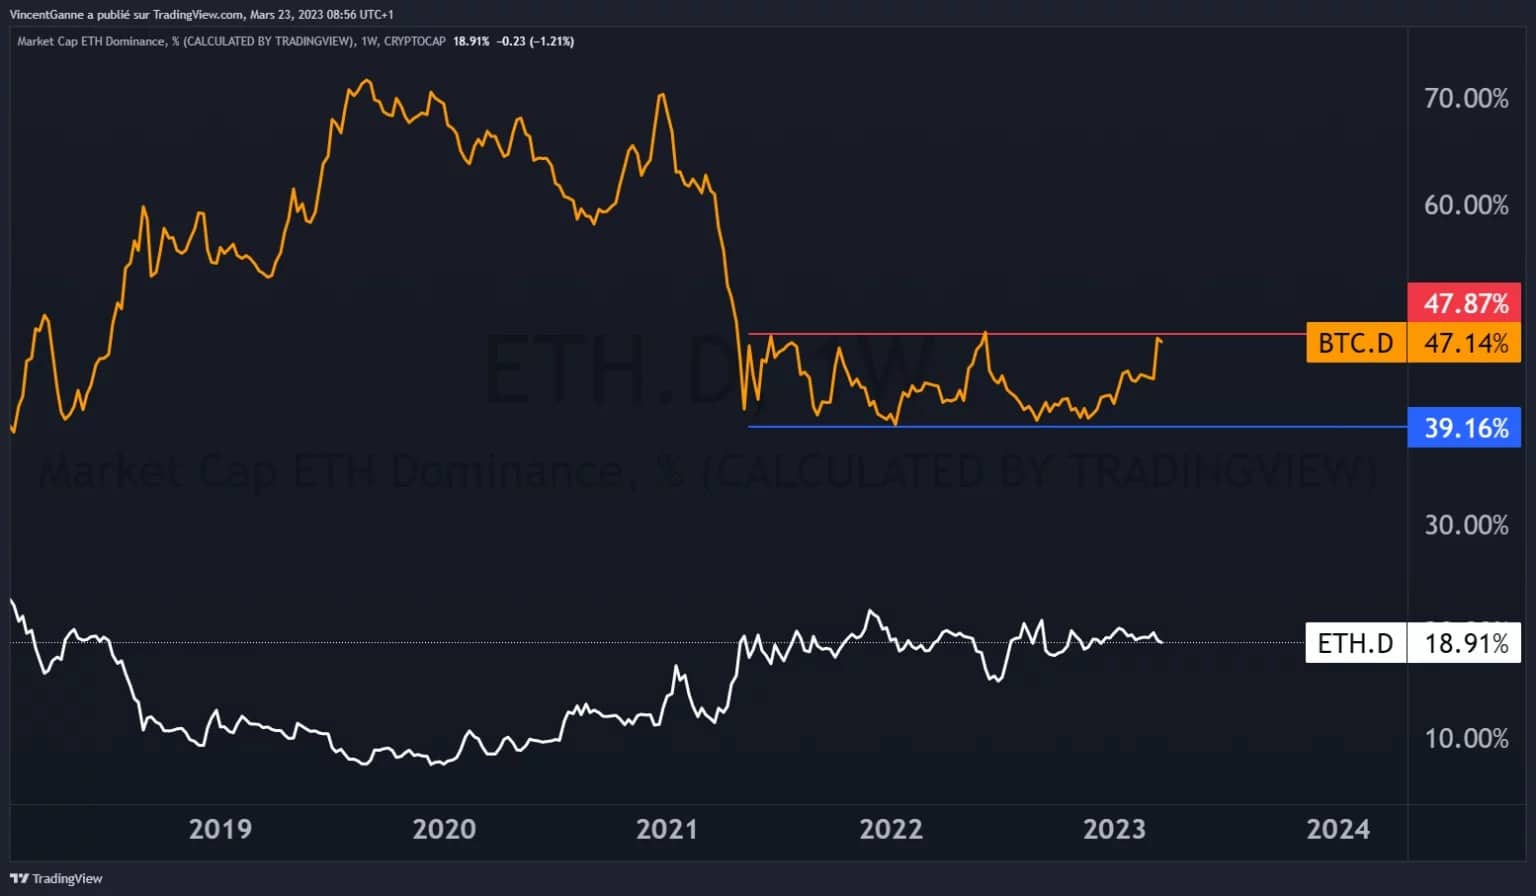 Graf zobrazující srovnání dominance Bitcoinu s dominancí Etherea